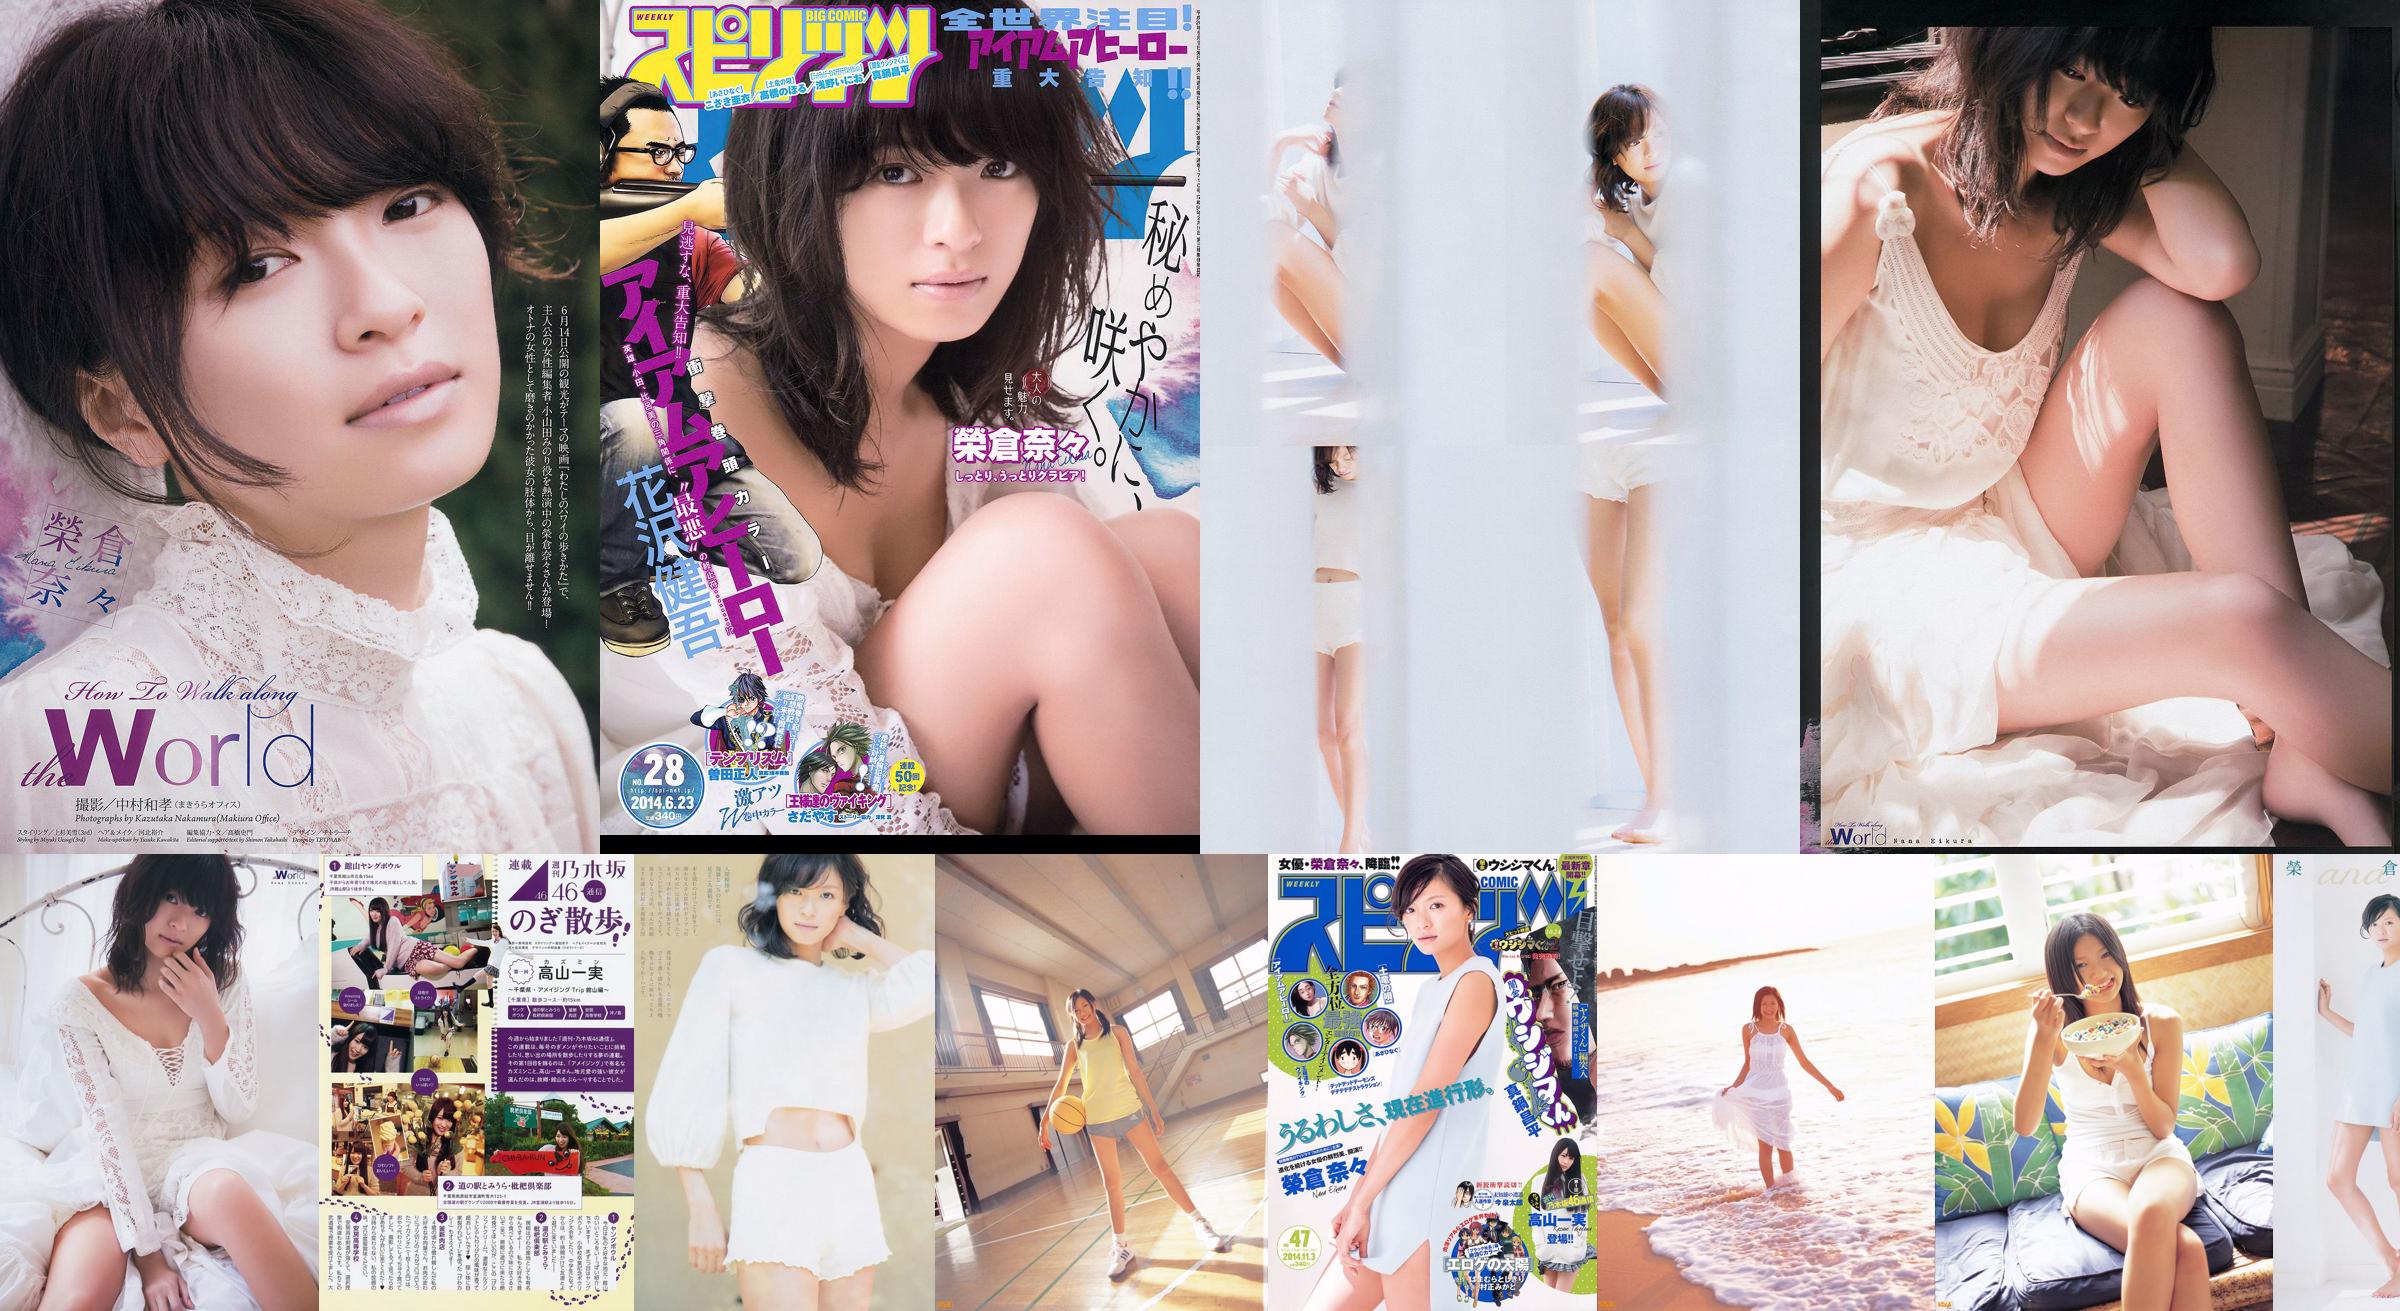 [Weekly Big Comic Spirits] Eikura Nana 2014 No.47 Photo Magazine No.7a9c9b Page 2